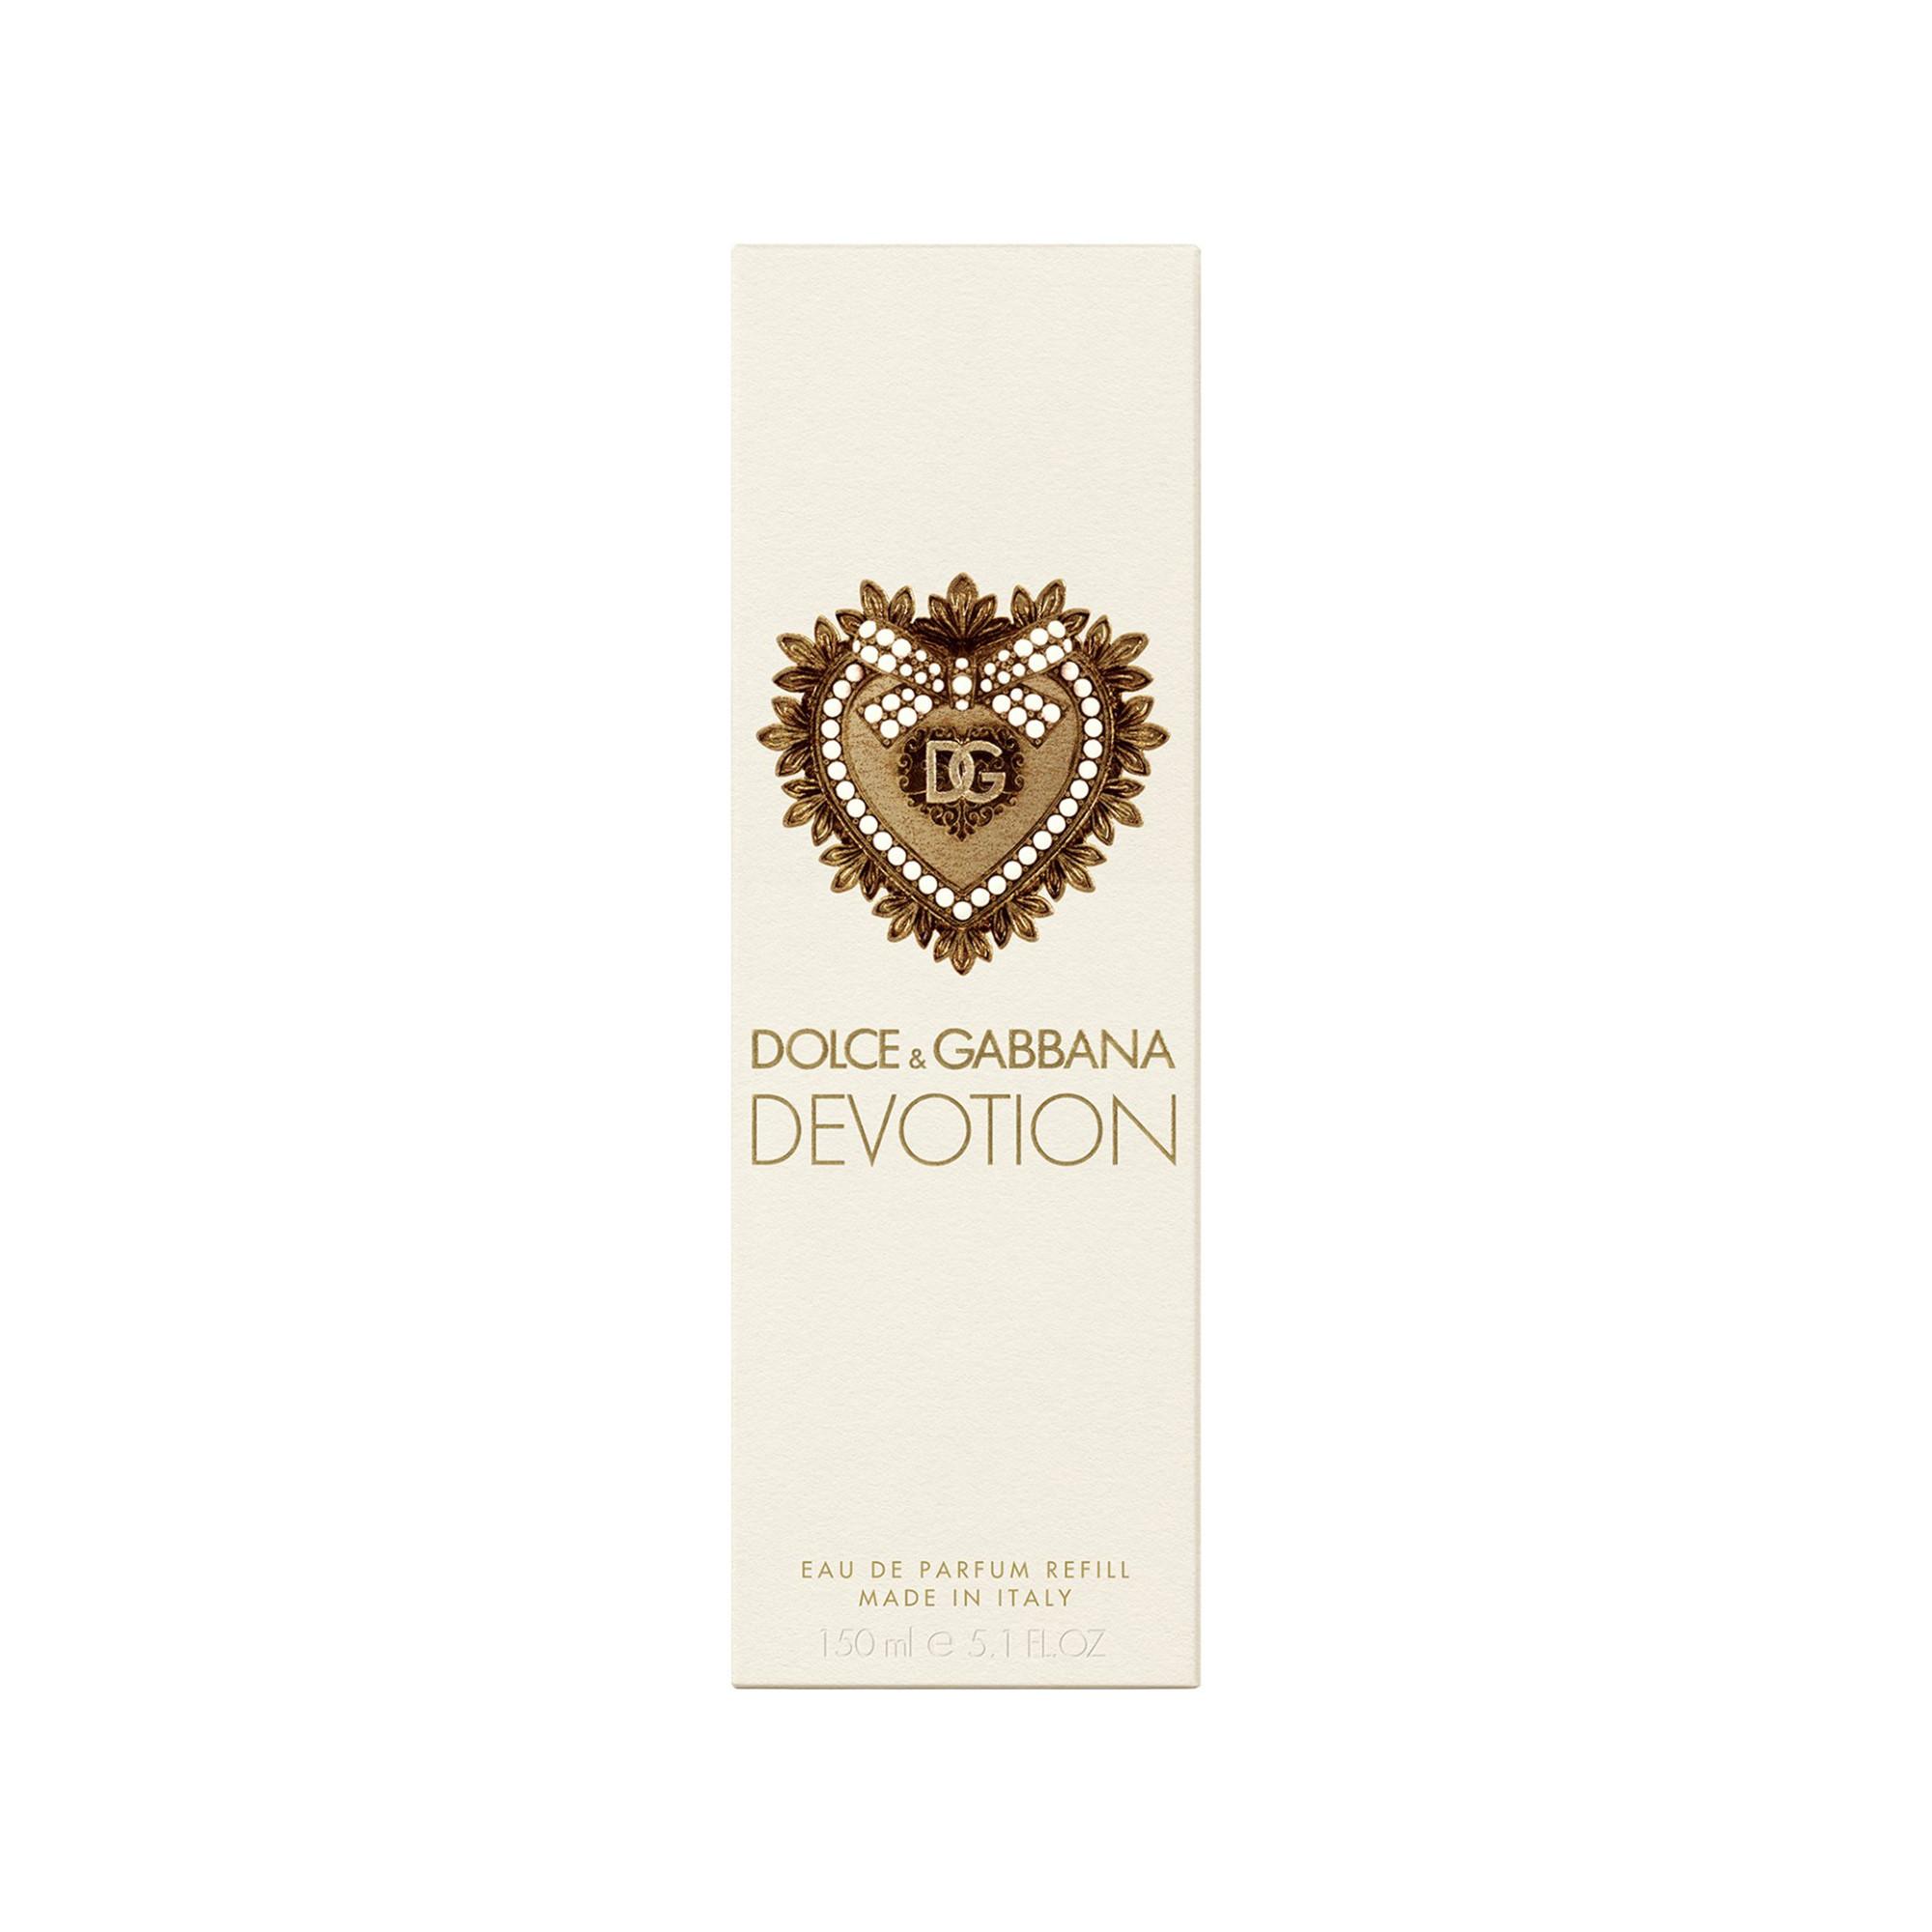 DOLCE&GABBANA Devotion Eau de Parfum Refill 